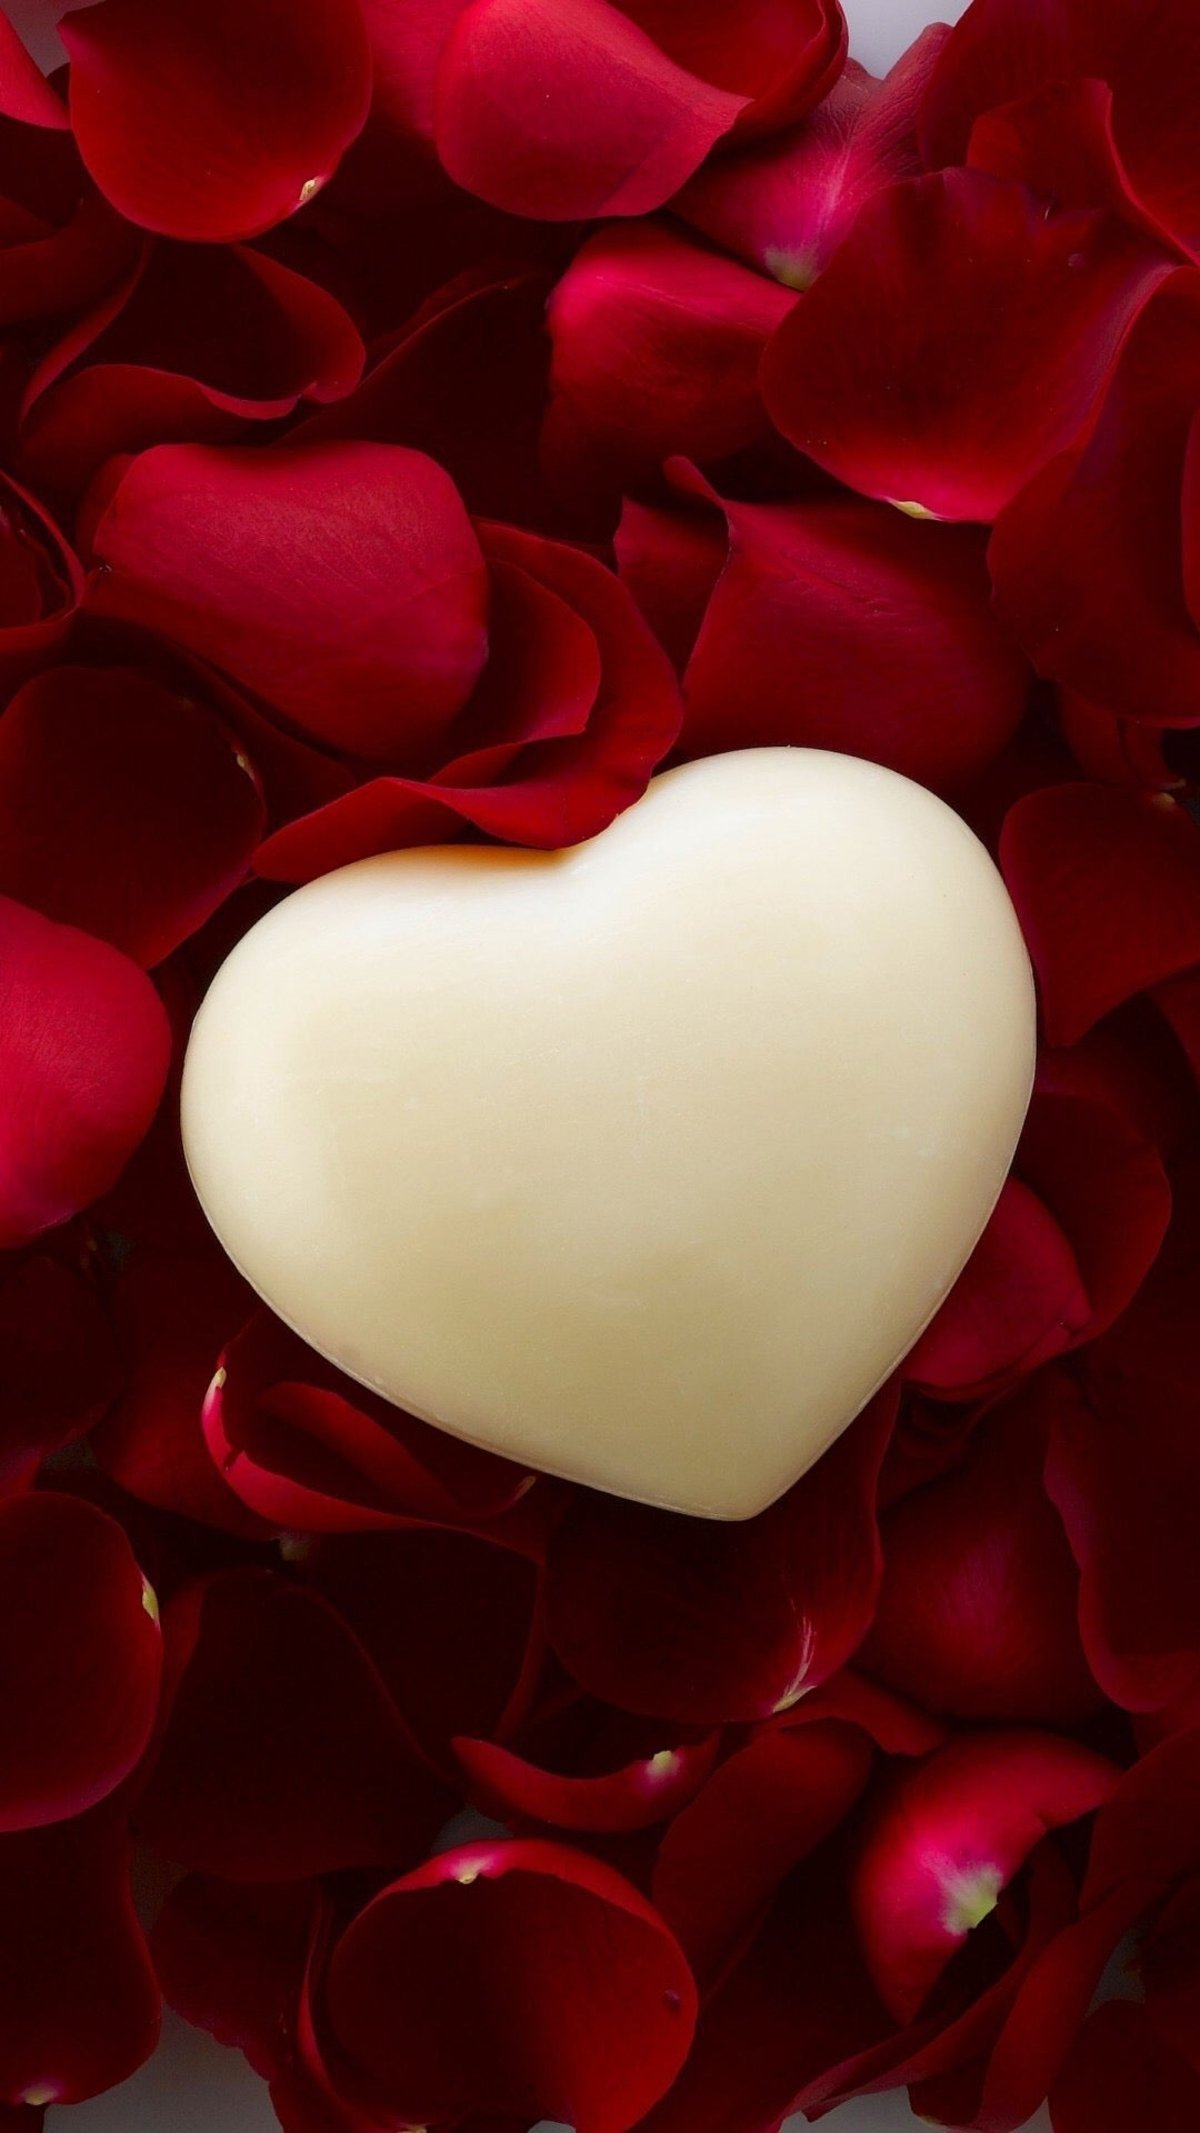 Los mejores fondos de pantalla para demostrar tu amor en San Valentín